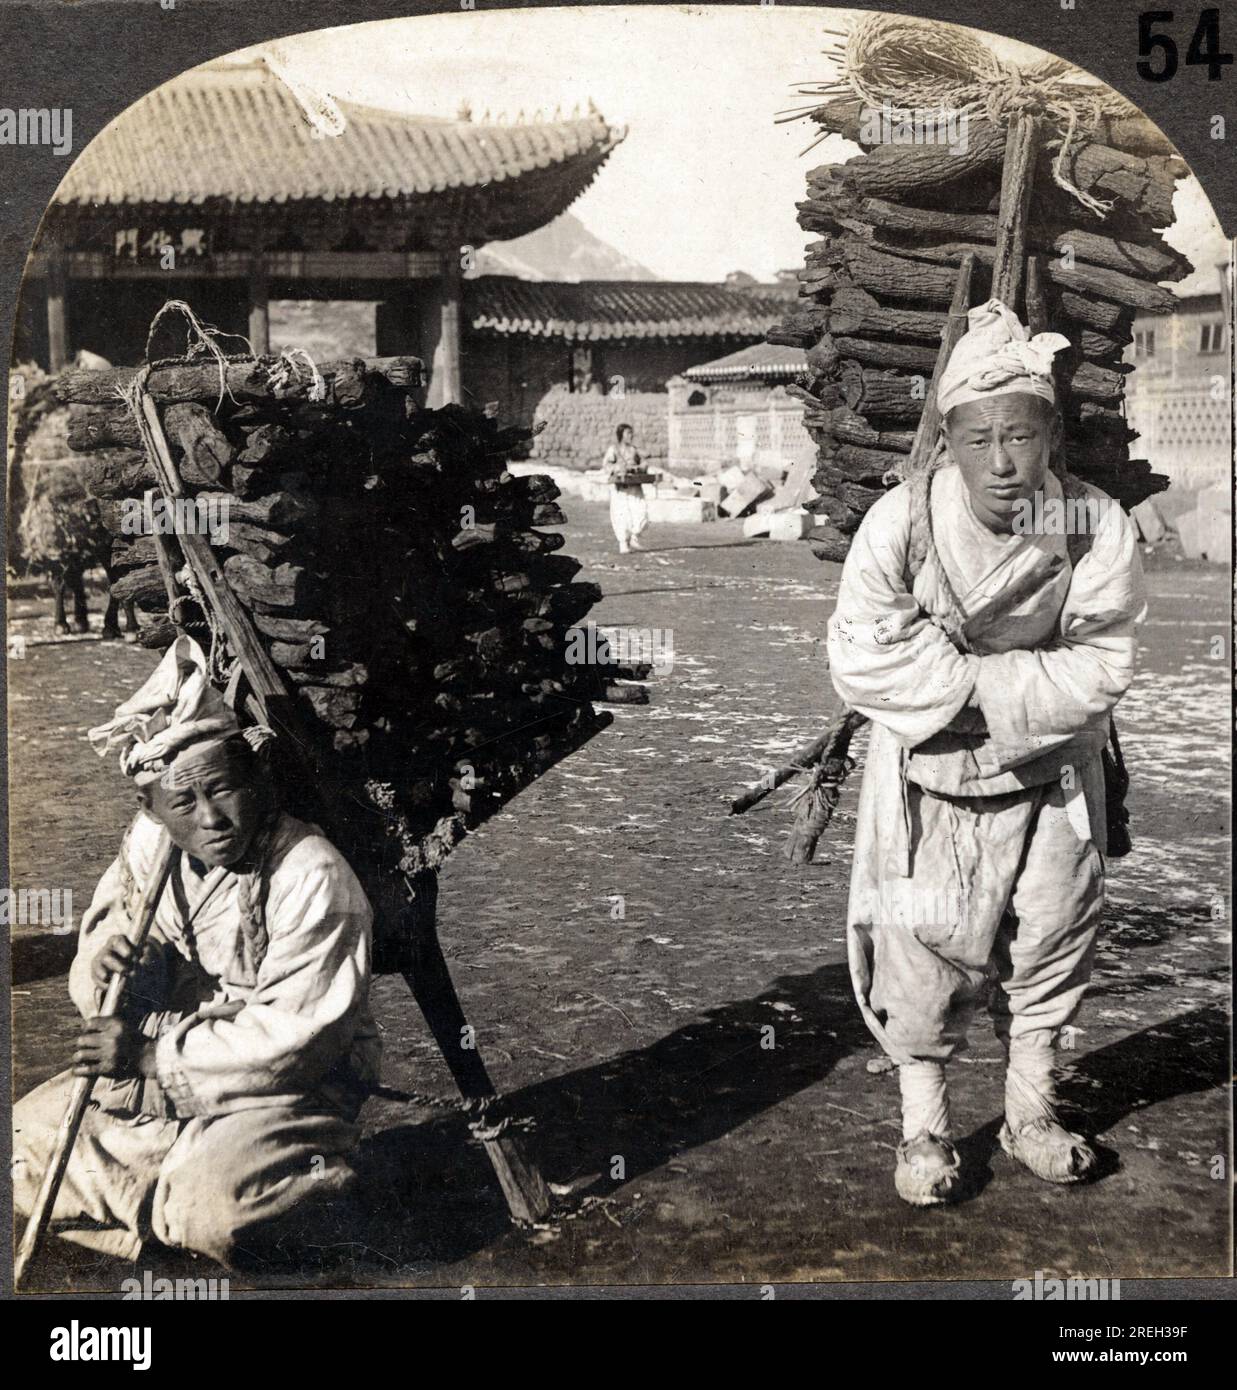 Deux portefaix Charge de Charbon de bois, dans une rue de Seoul, Coree. Fotografie, 1904. . Stockfoto